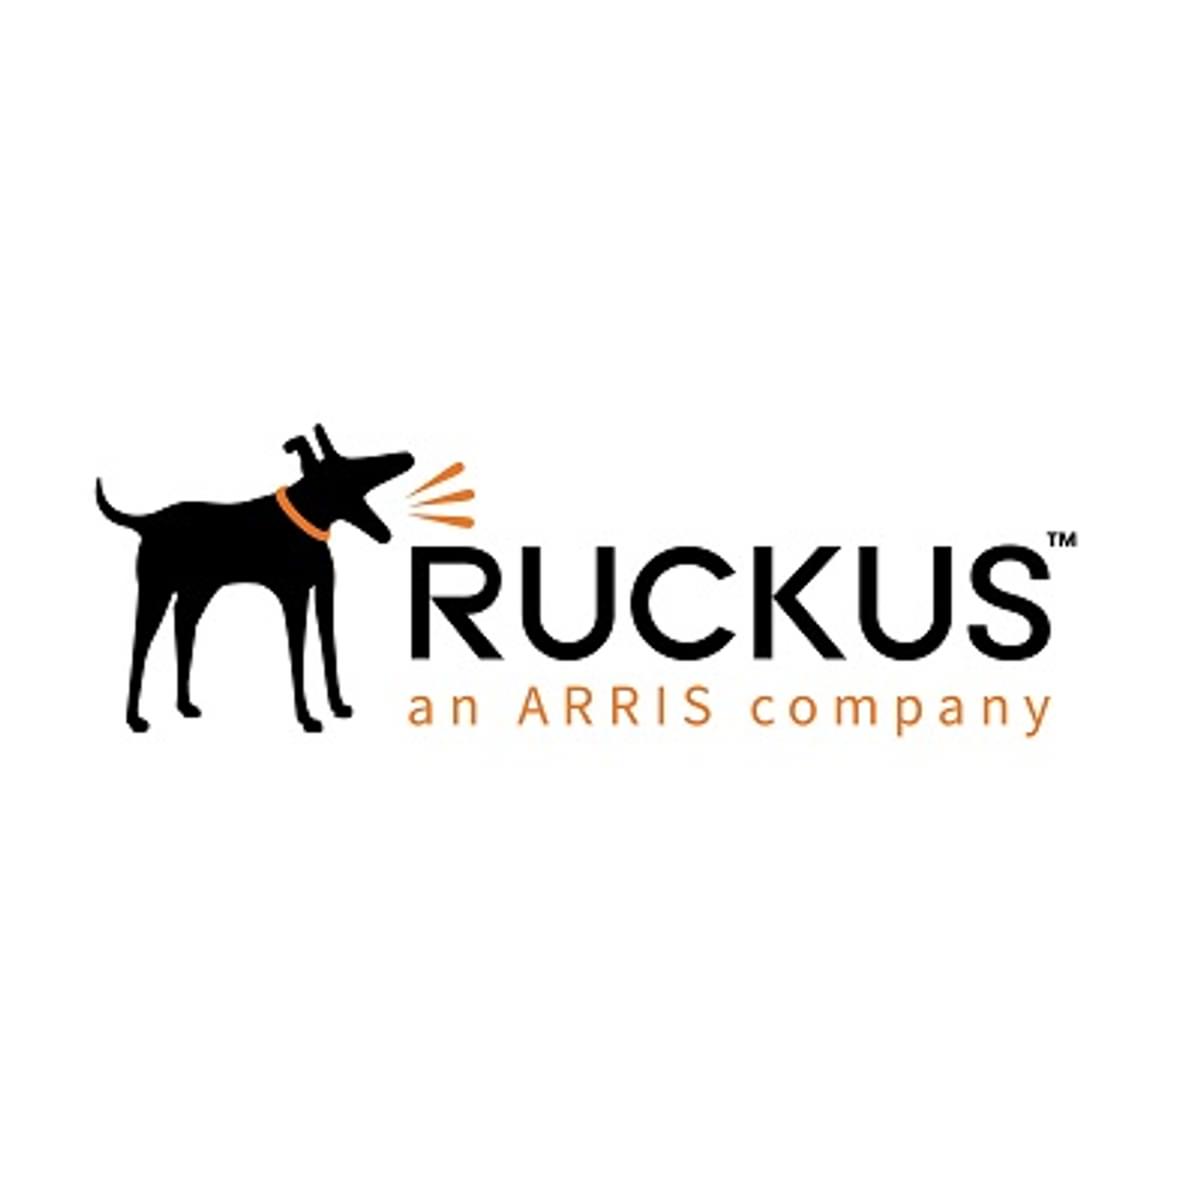 Ruckus versterkt channel met ‘Dogfather’ Technical Community image